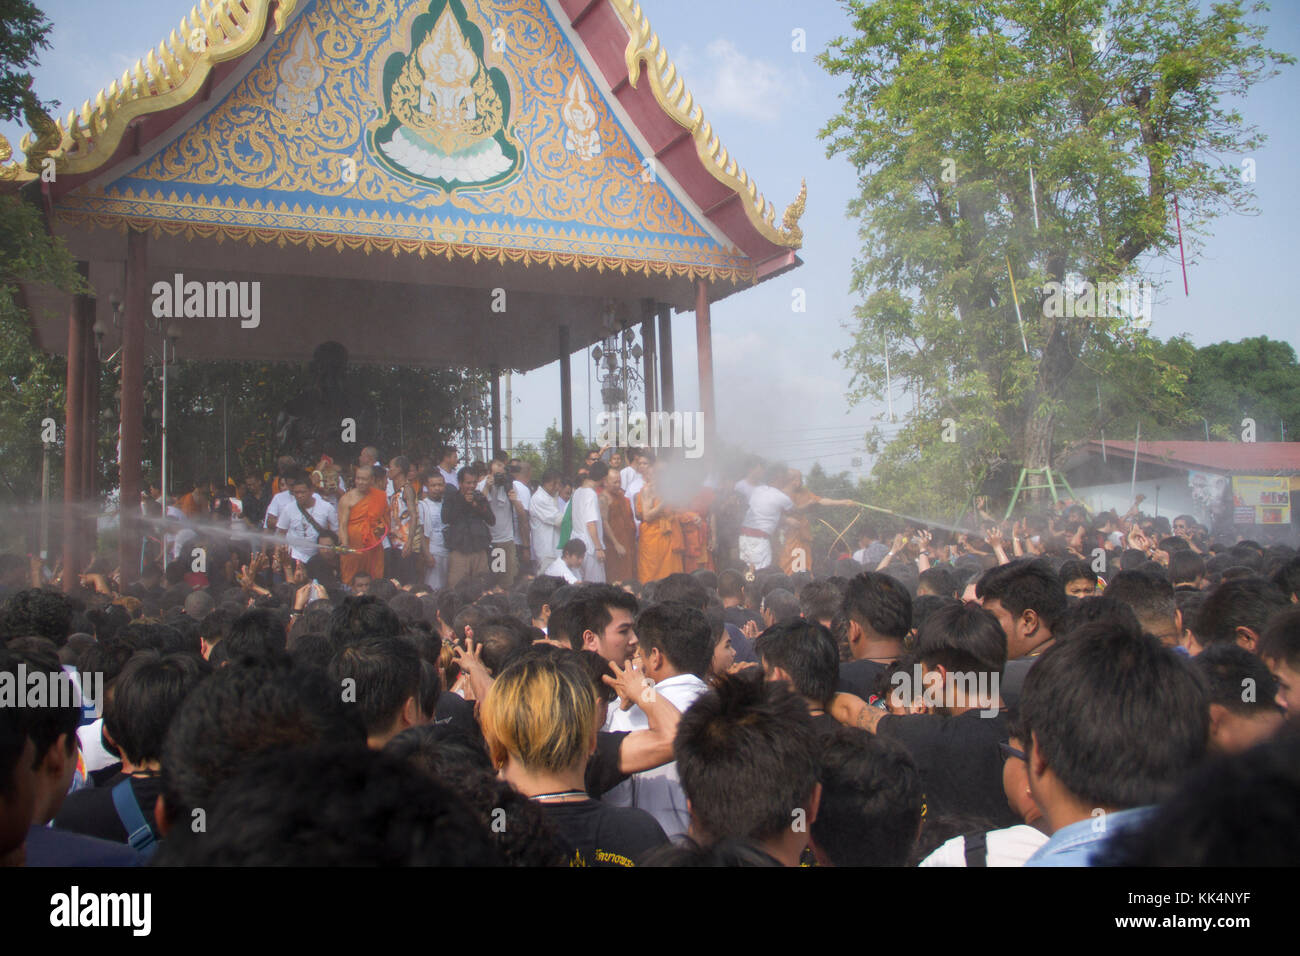 Les moines bouddhistes, pulvériser de l'eau sur la foule lors de la Wat Phra Bang òwai khruó temple pour la cérémonie à Nakhon Pathom, le 11 mars 2017. Certains des particulier Banque D'Images